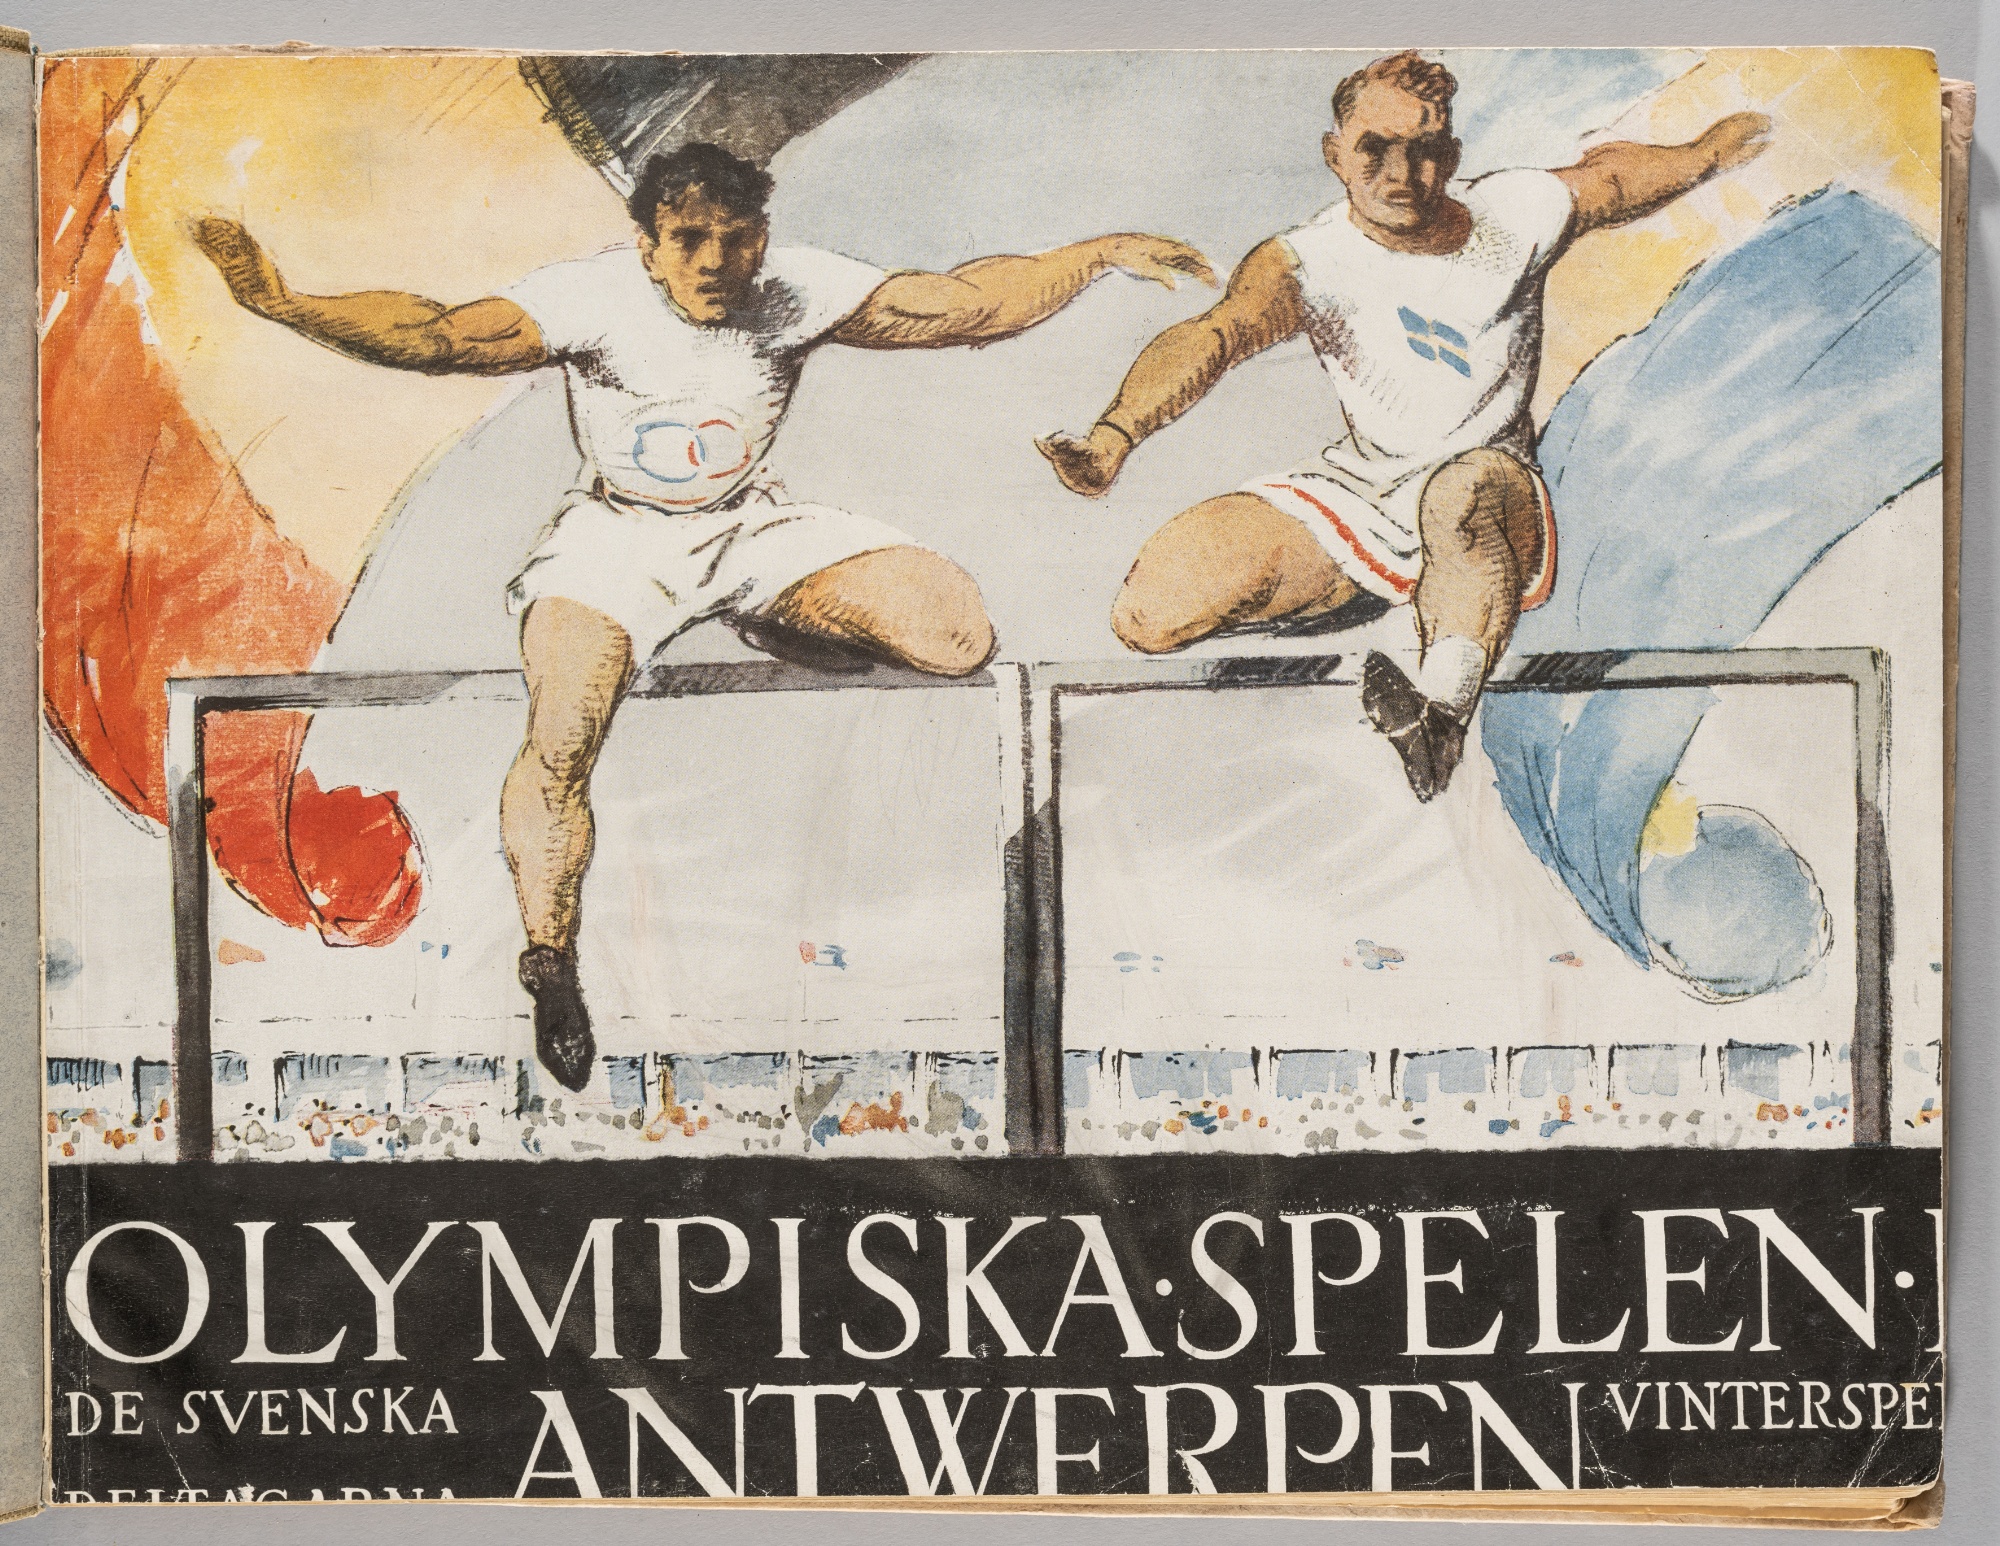 Antwerp 1920 Olympic Games "Olympiska Spelen Antwerpen 1920"